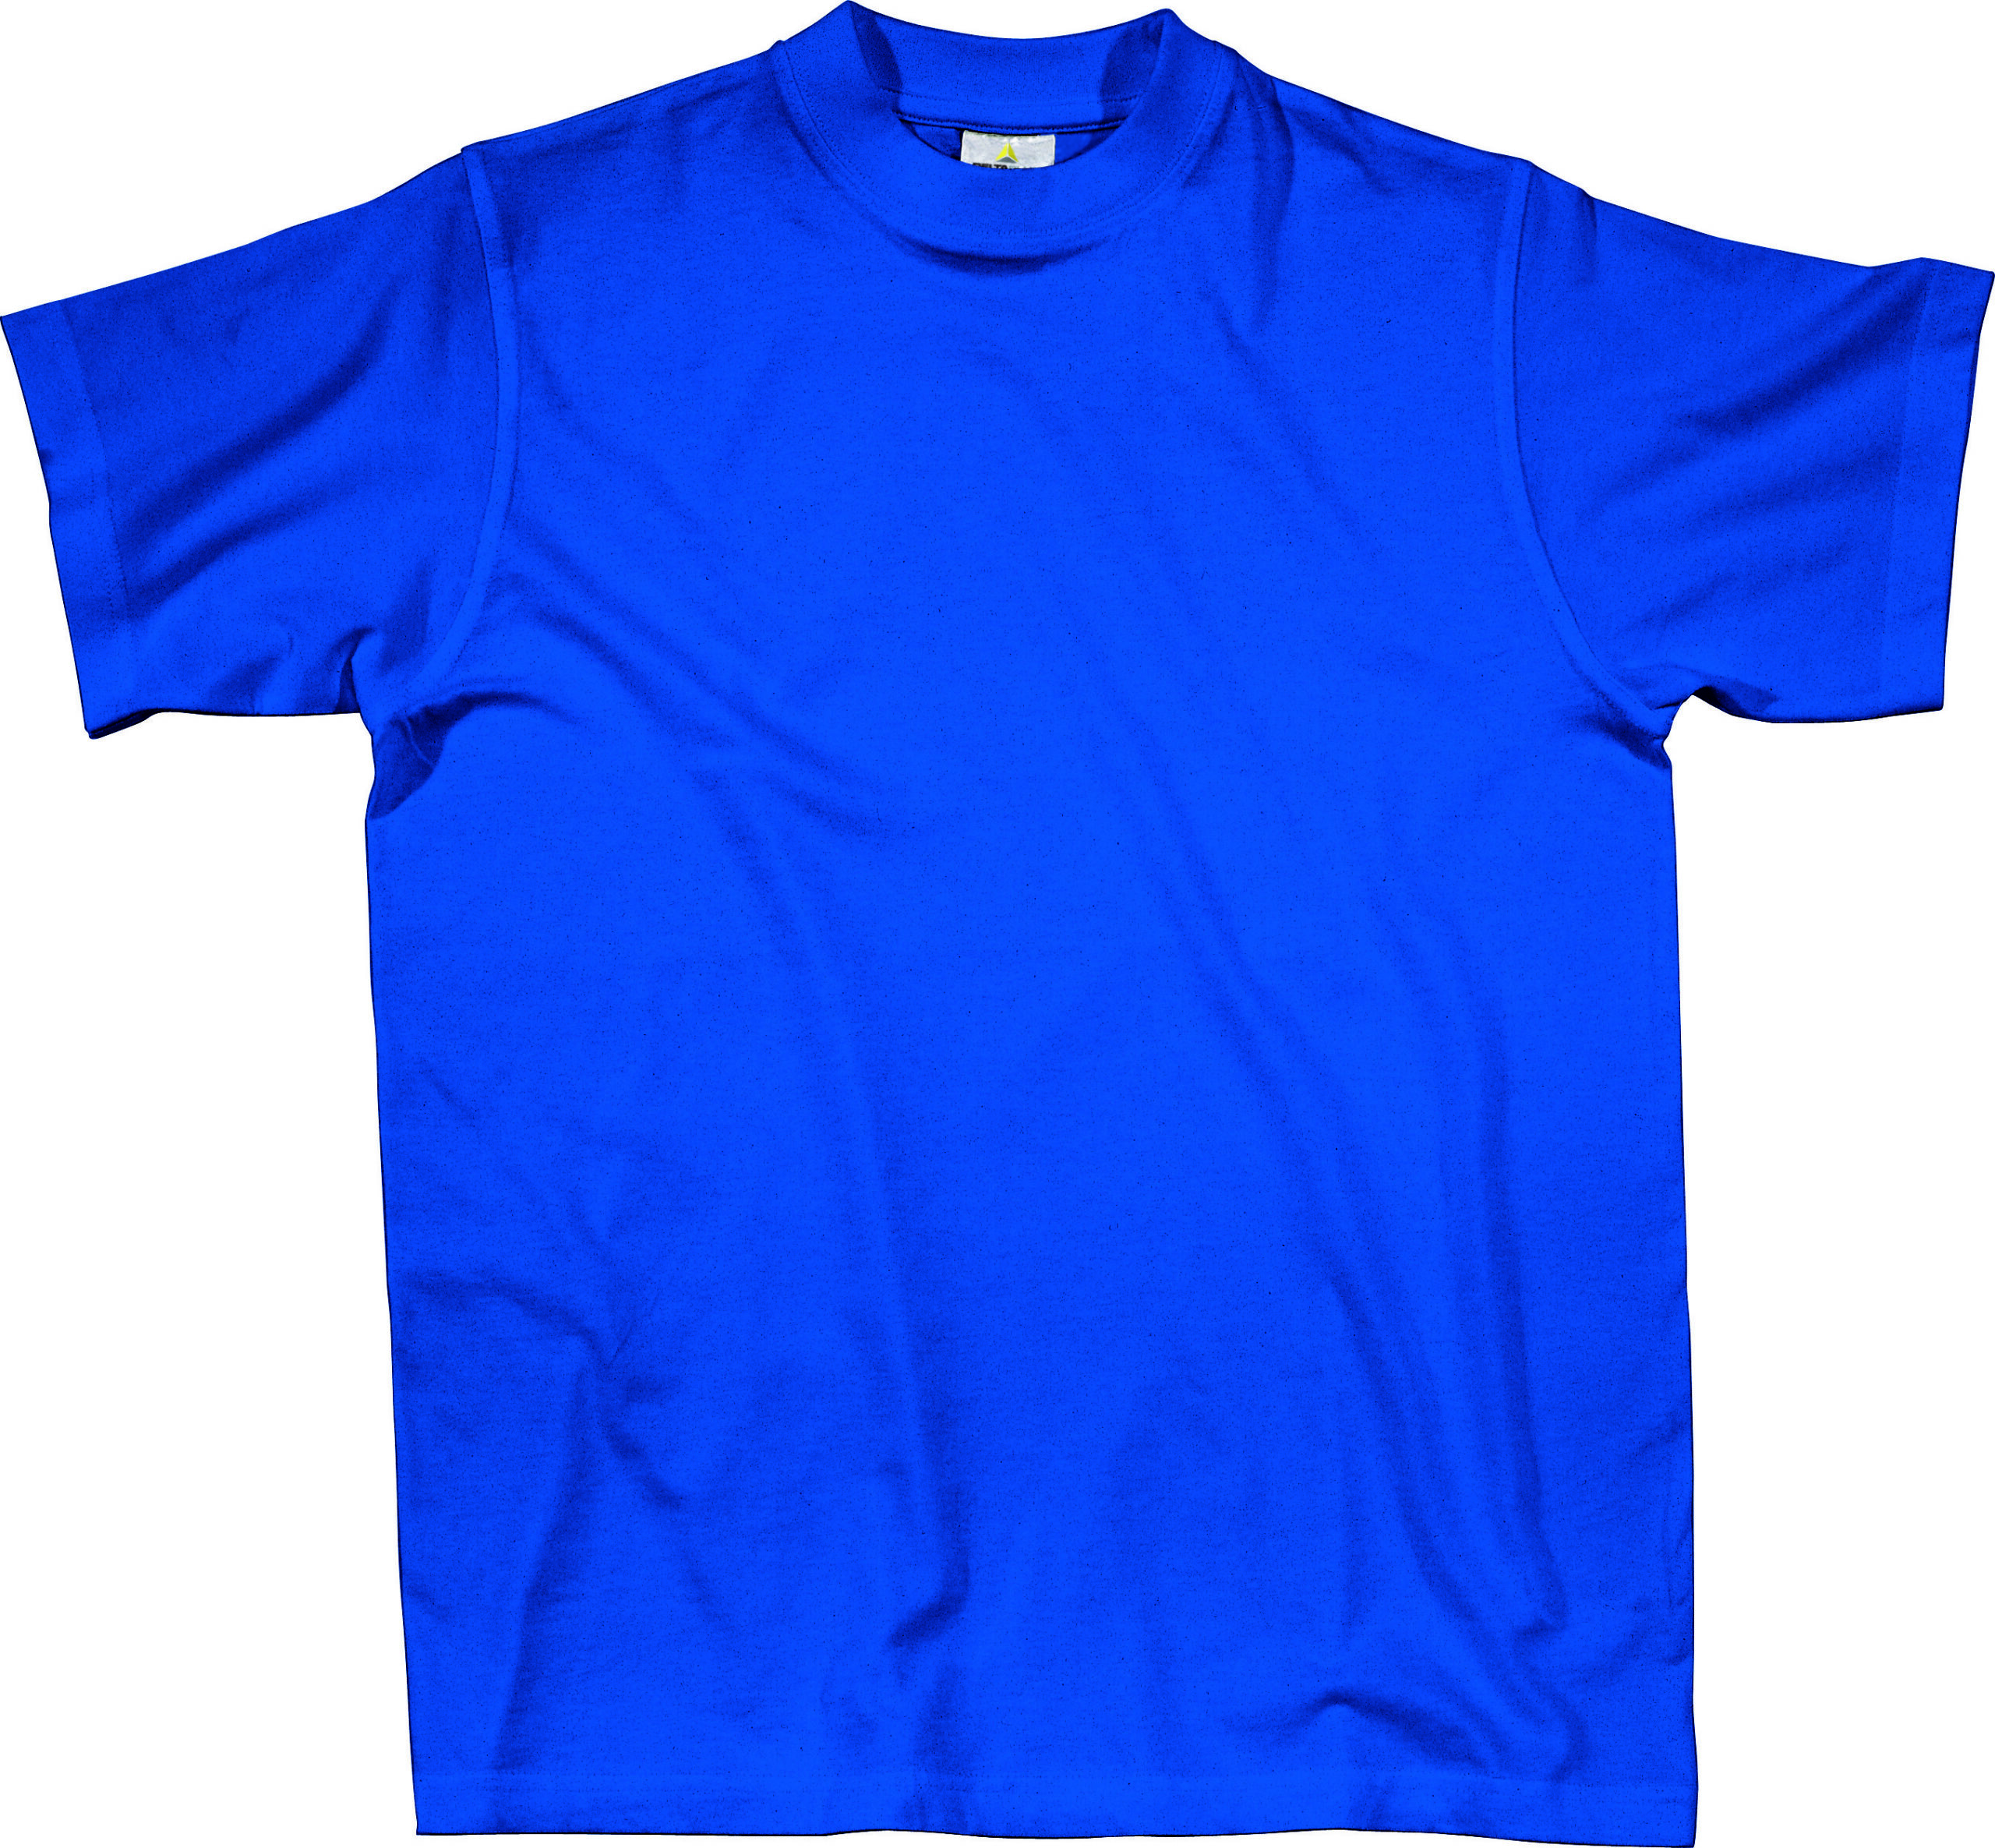 T Shirt Basic Napoli Blu Tg Xl 100 Cotone Napolbl Xl 3295249116019